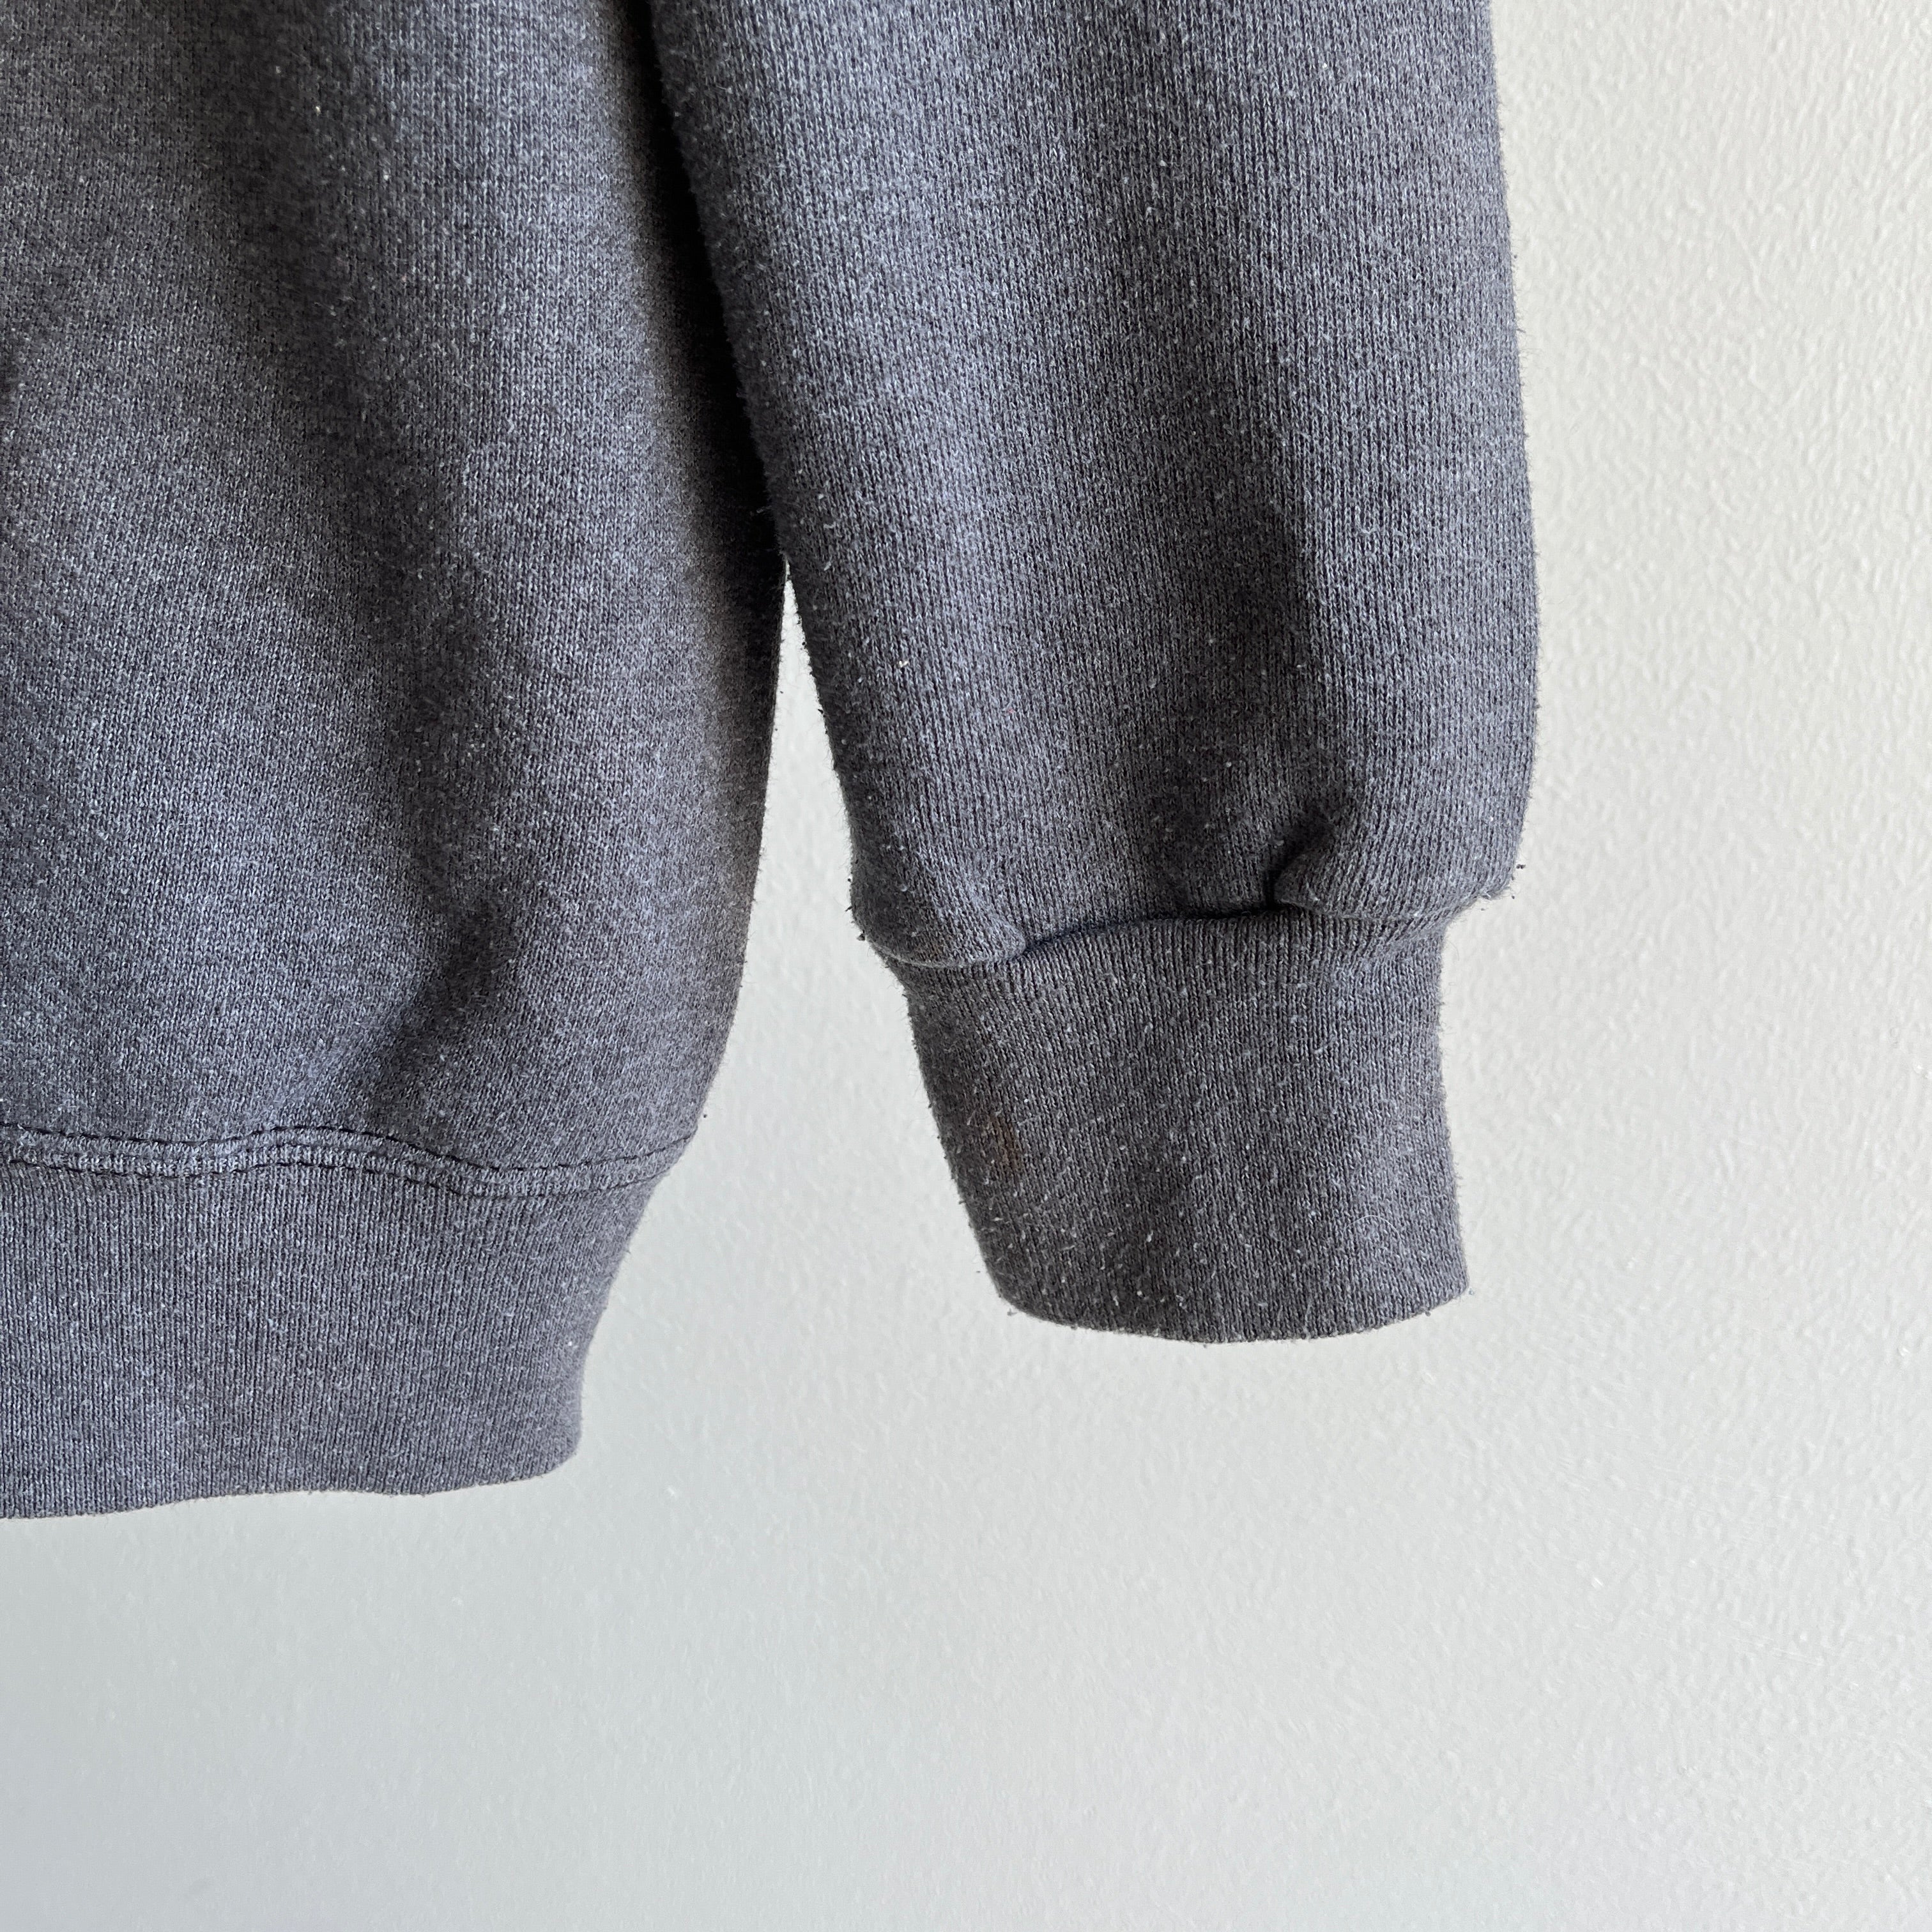 1980s Sweats Appeal Dark Gray Cozy Sweatshirt by Tultex